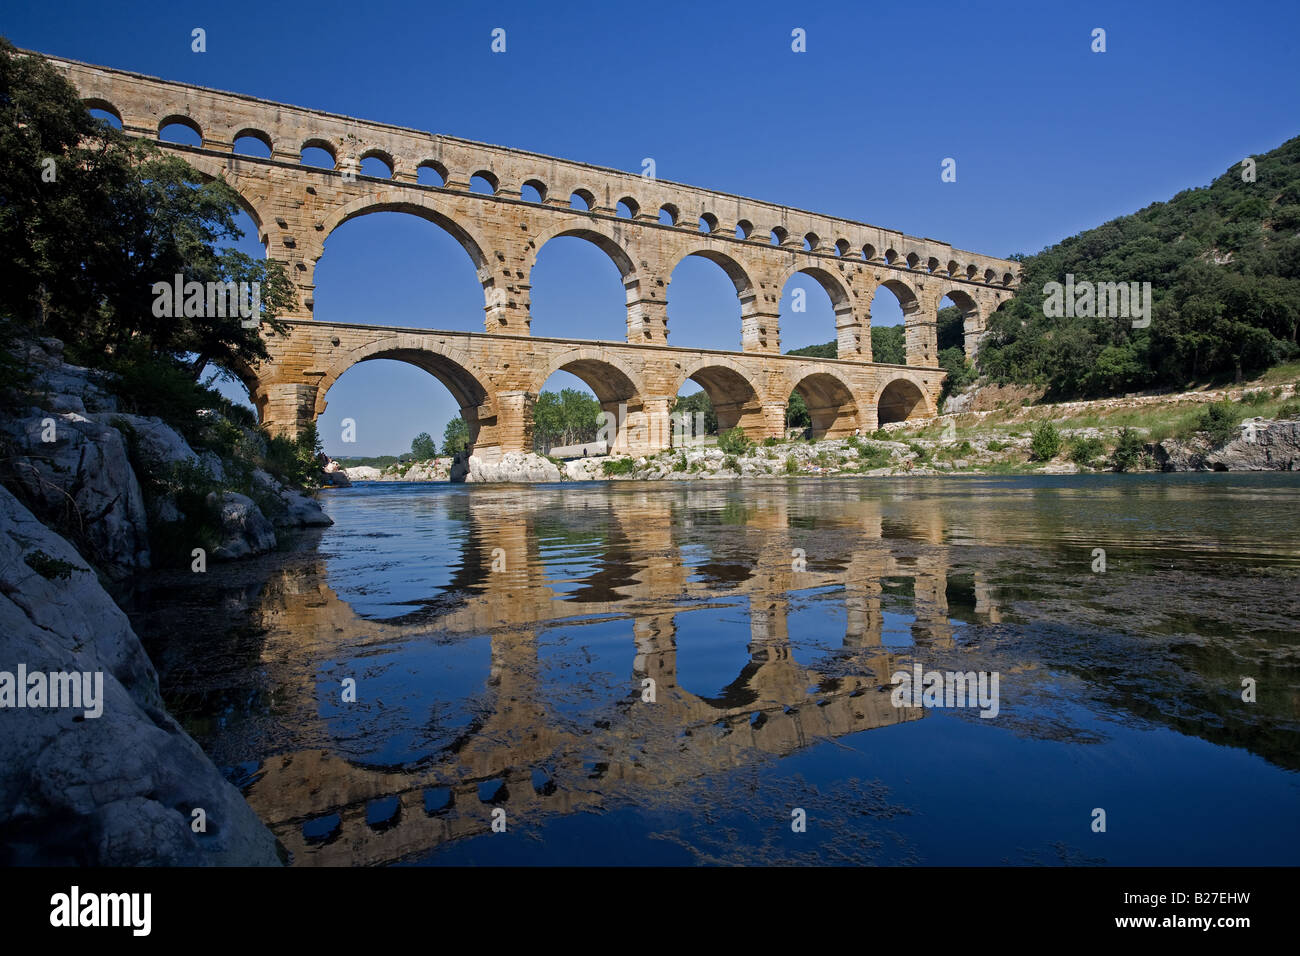 Pont du Gard, pont sur la rivière Gardon, Provence, France. Banque D'Images